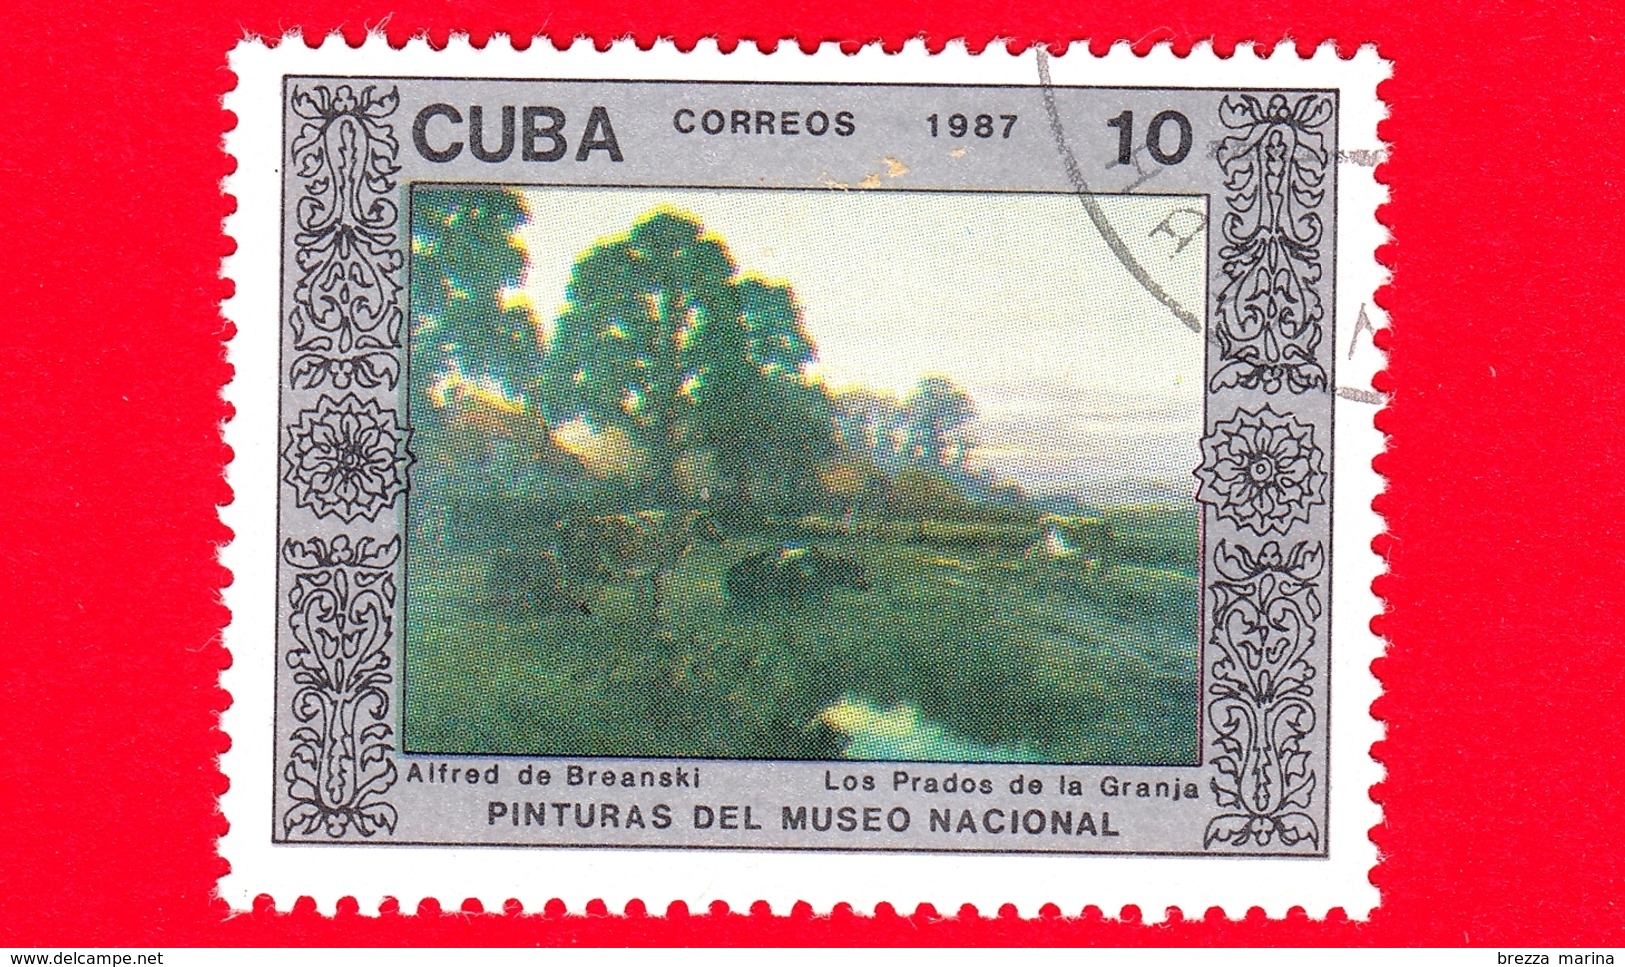 CUBA - 1987 - Azienda Agricola, Dipinto Di Alfred De Breanski Nel Museo Nazionale Di Belle Arti, L'Avana - 10 - Nuovi